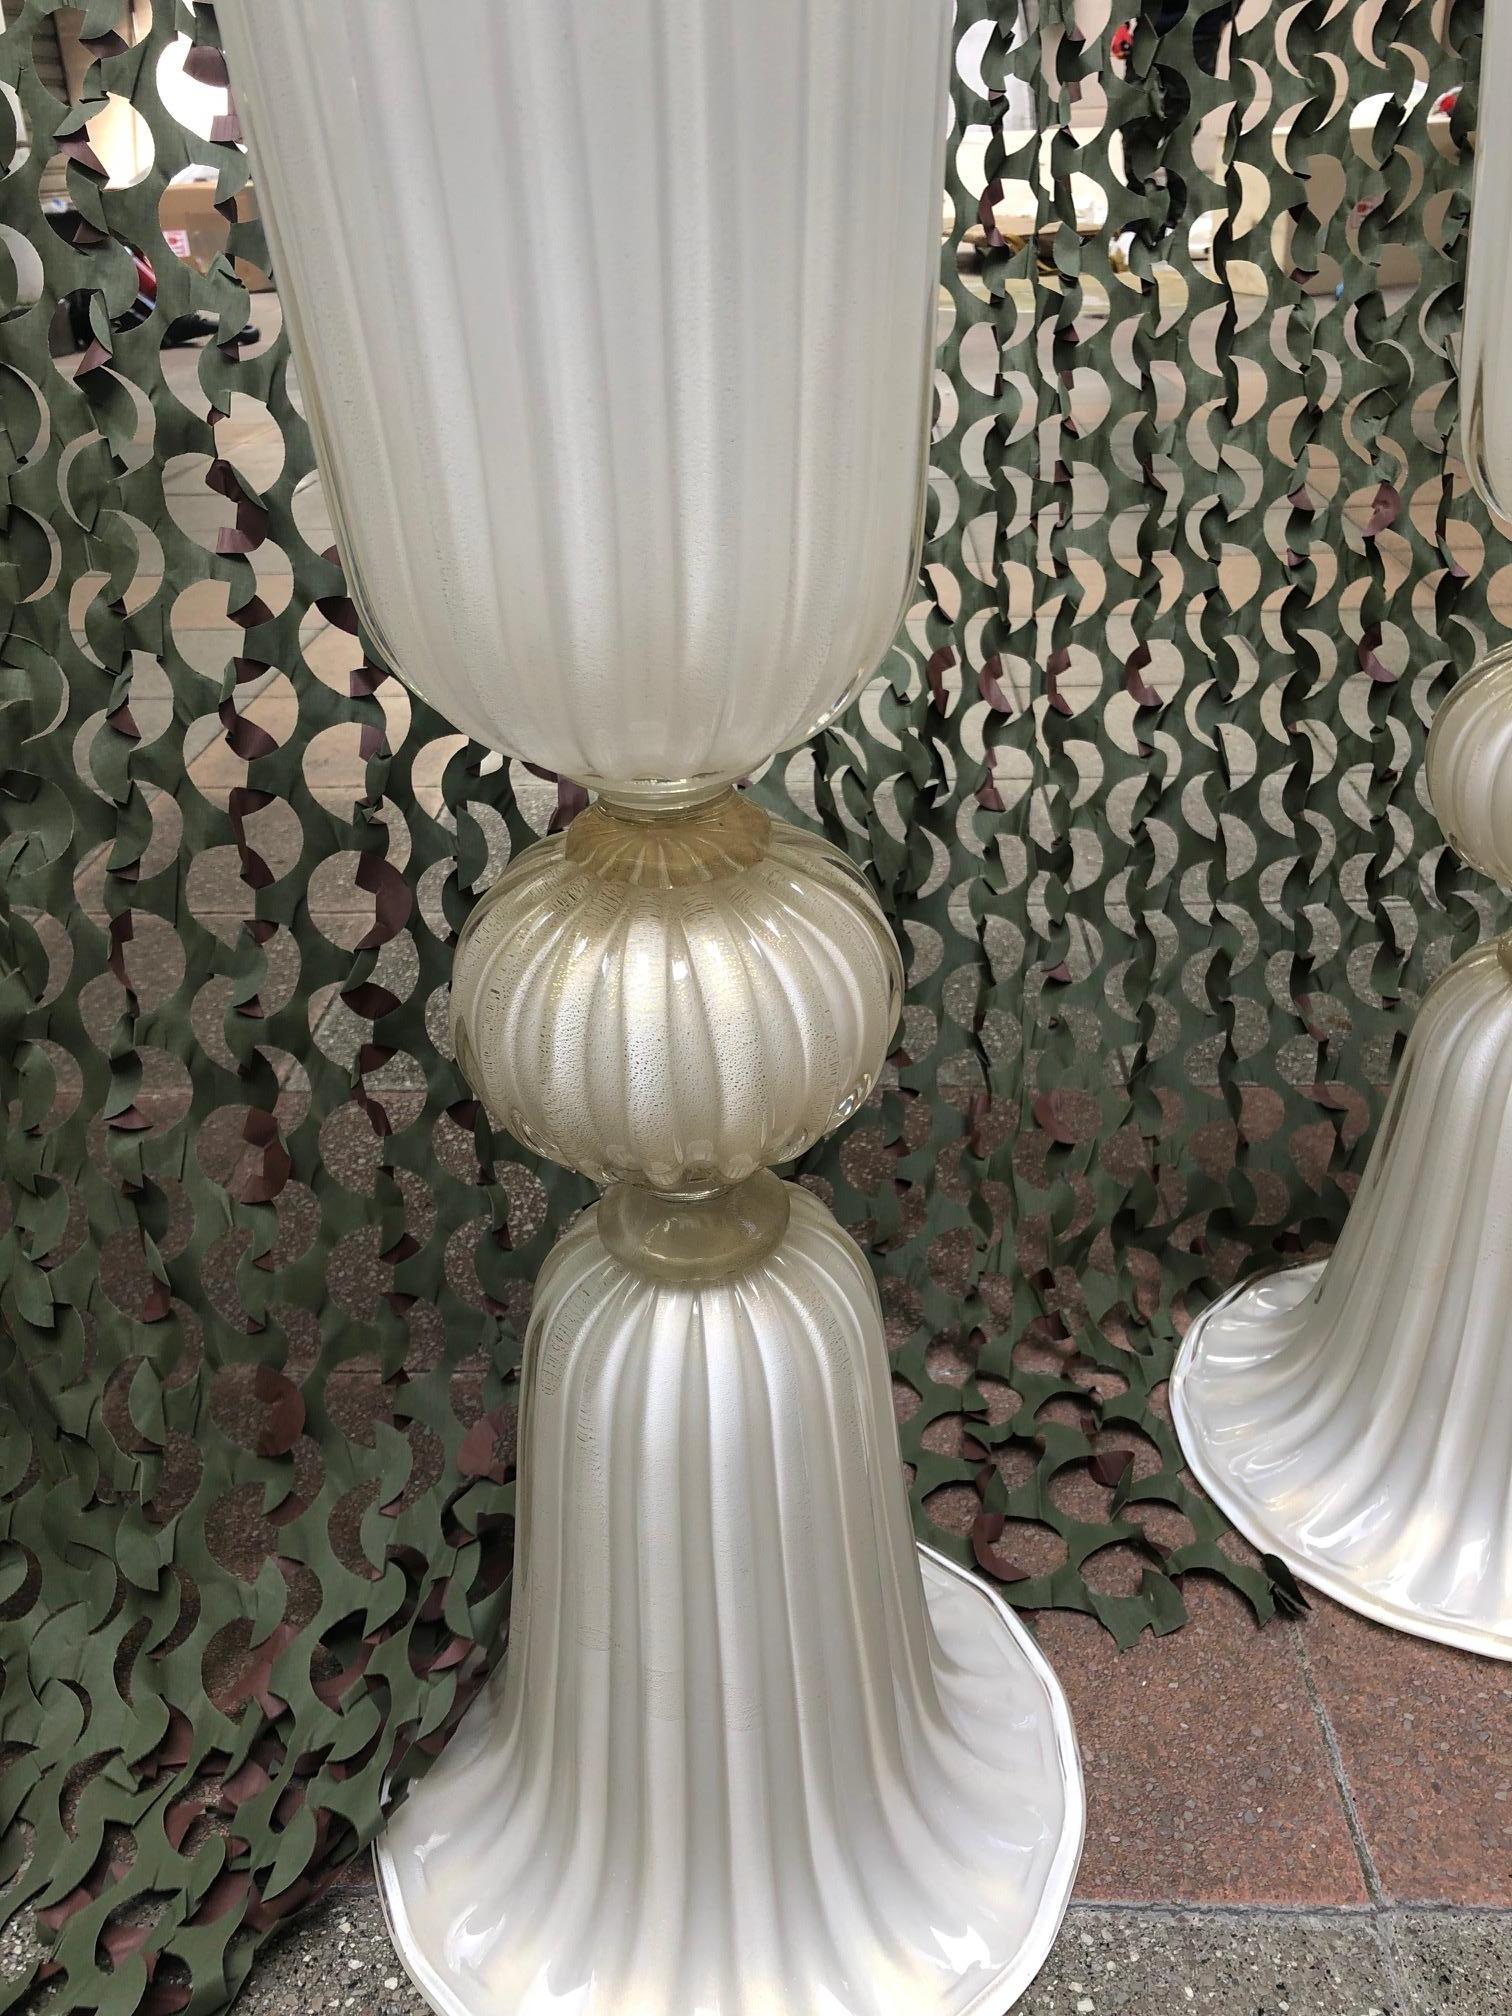 Pair of vases in Murano glass.